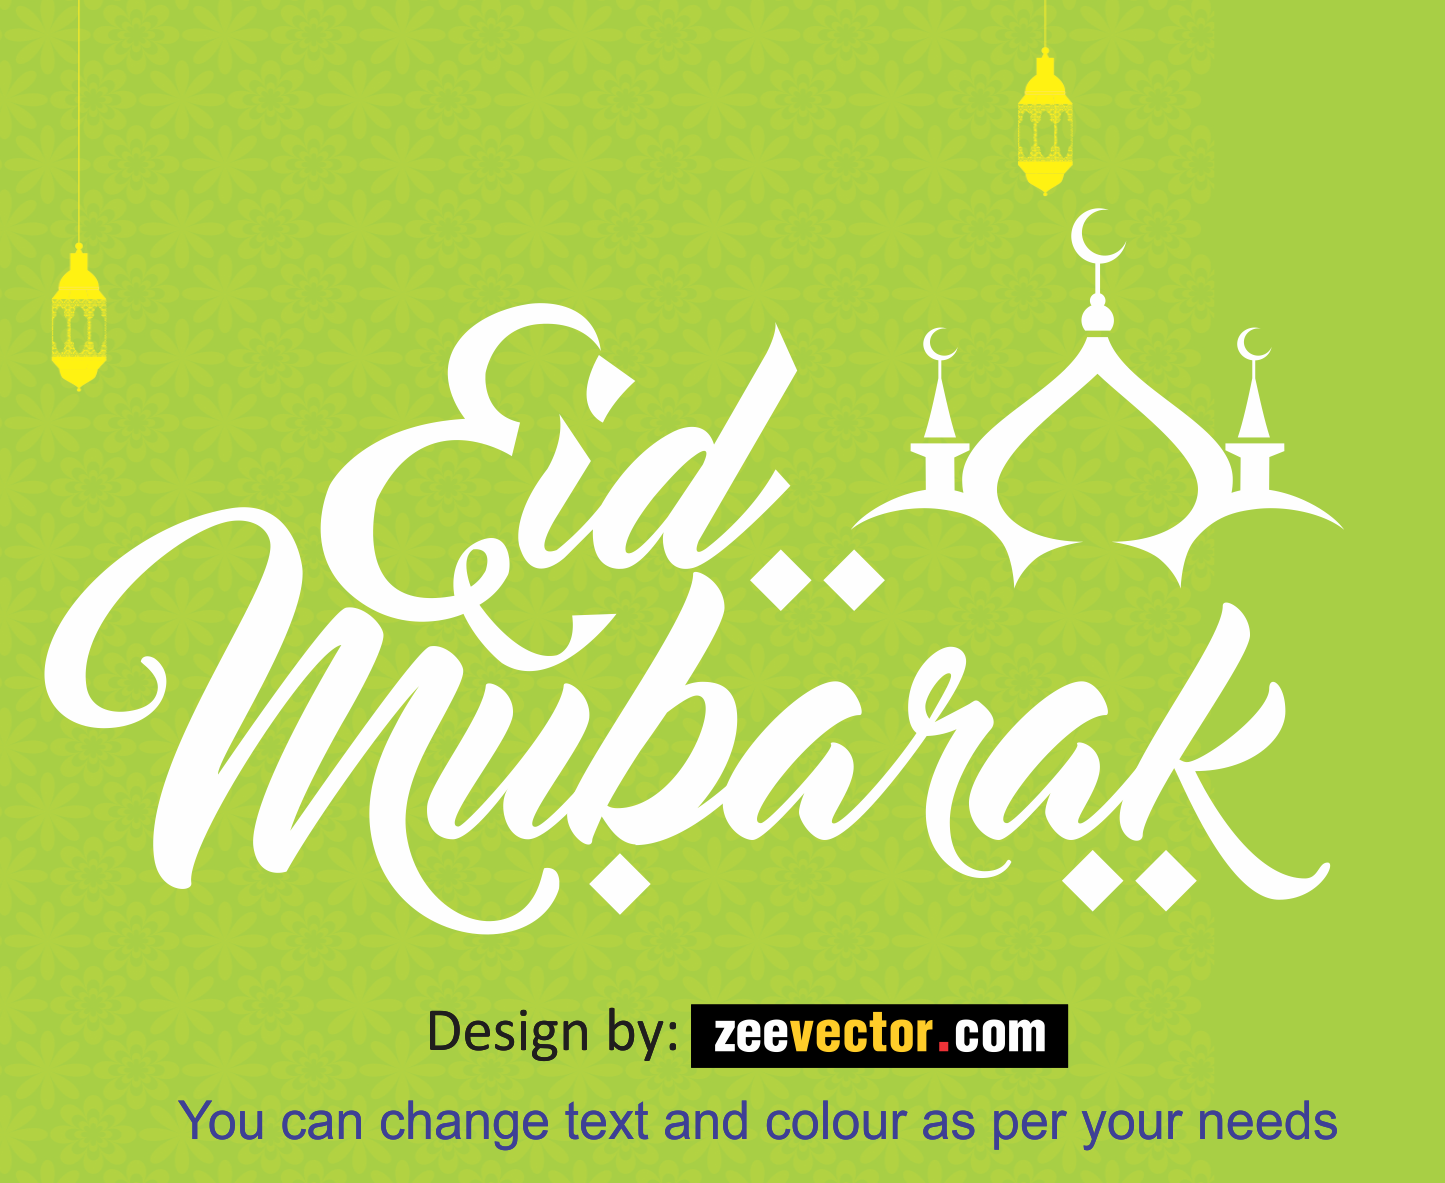 Eid Mubarak : A Few Interesting Bytes About Eid-Ul-Fitr - Wirally